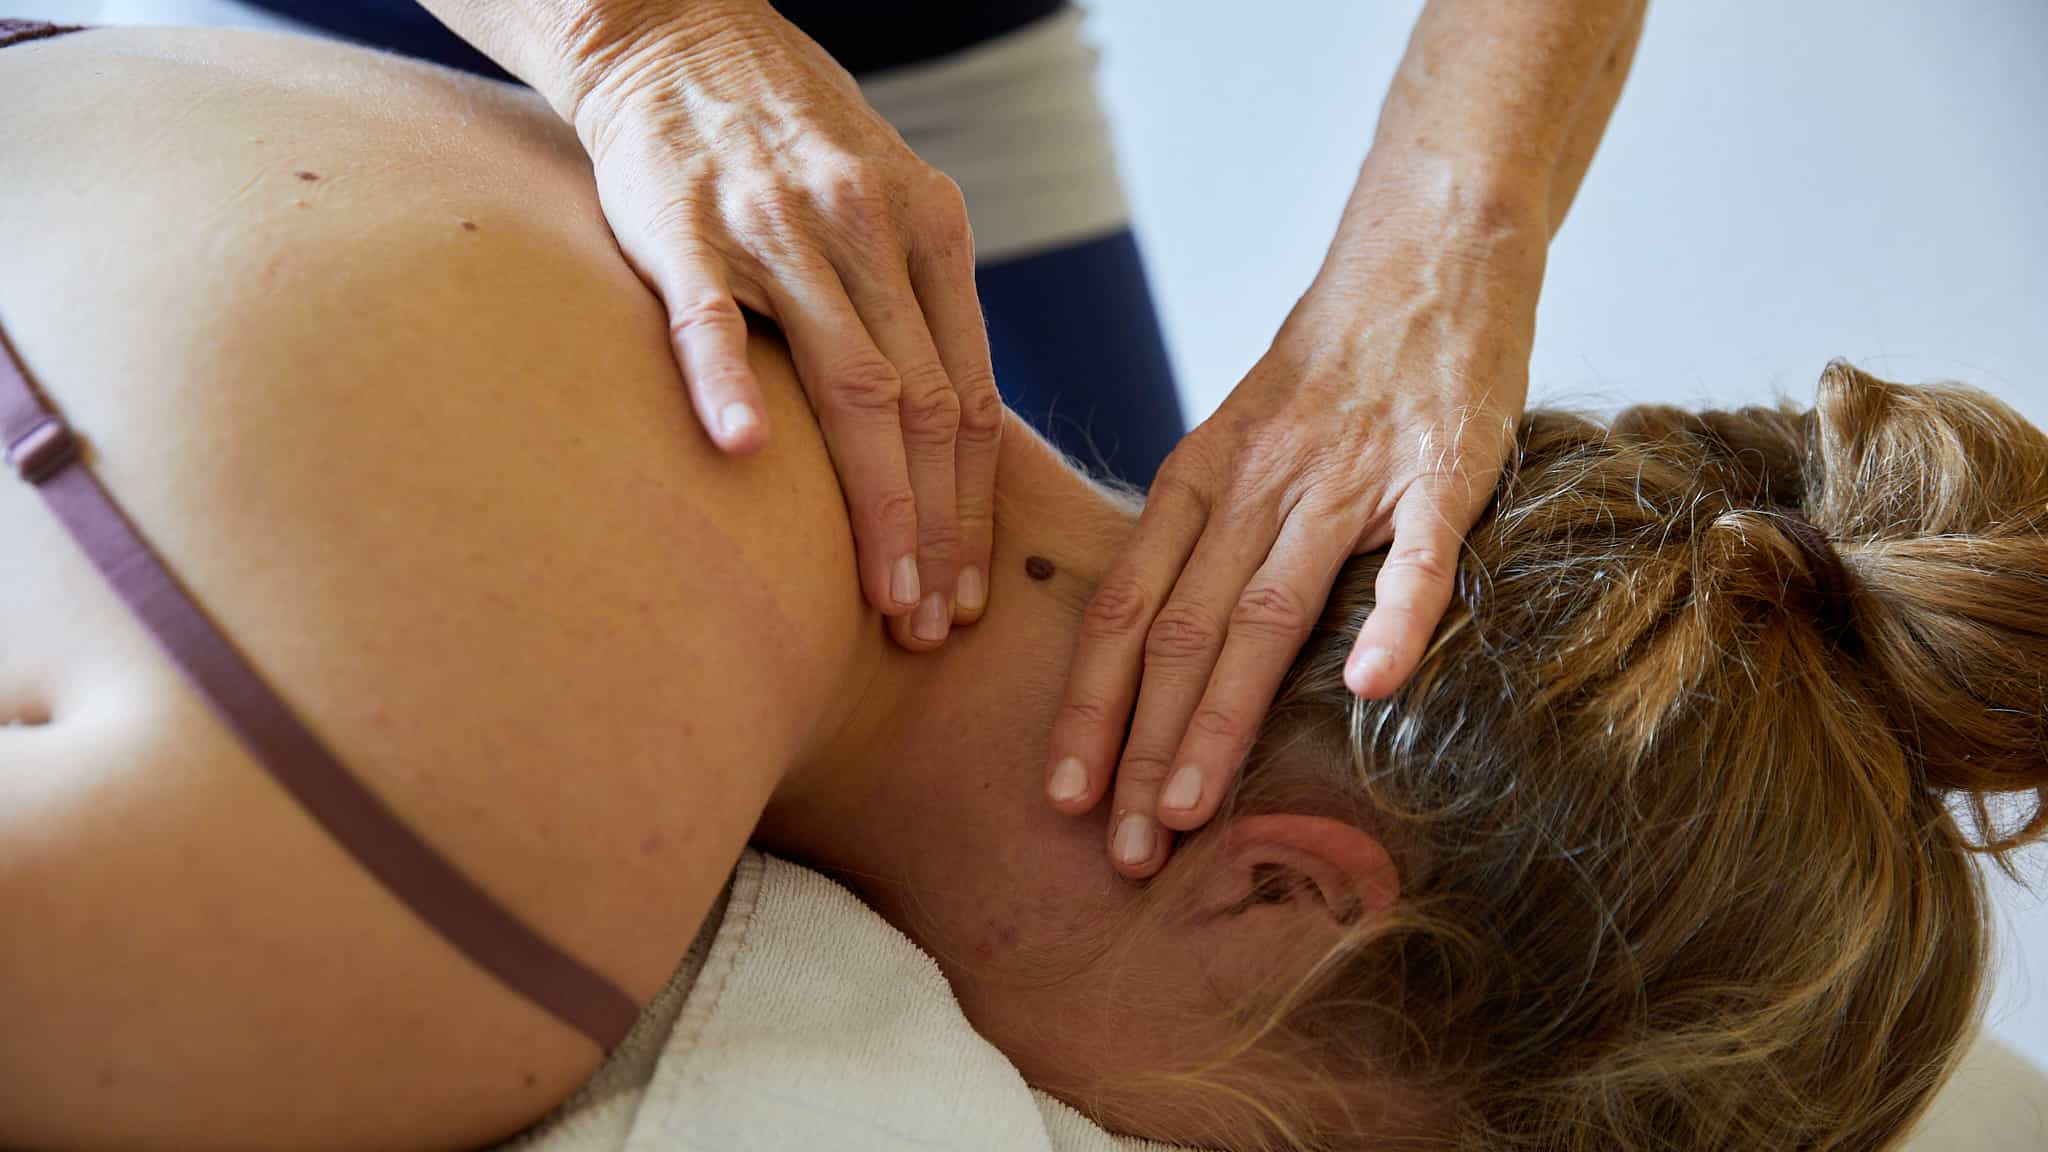 Behandlung am Hals mit einer medizinischen Massage. Klientin liegt in Bauchlage. Damit kann eine Dauerspannung aufgelöst werden.